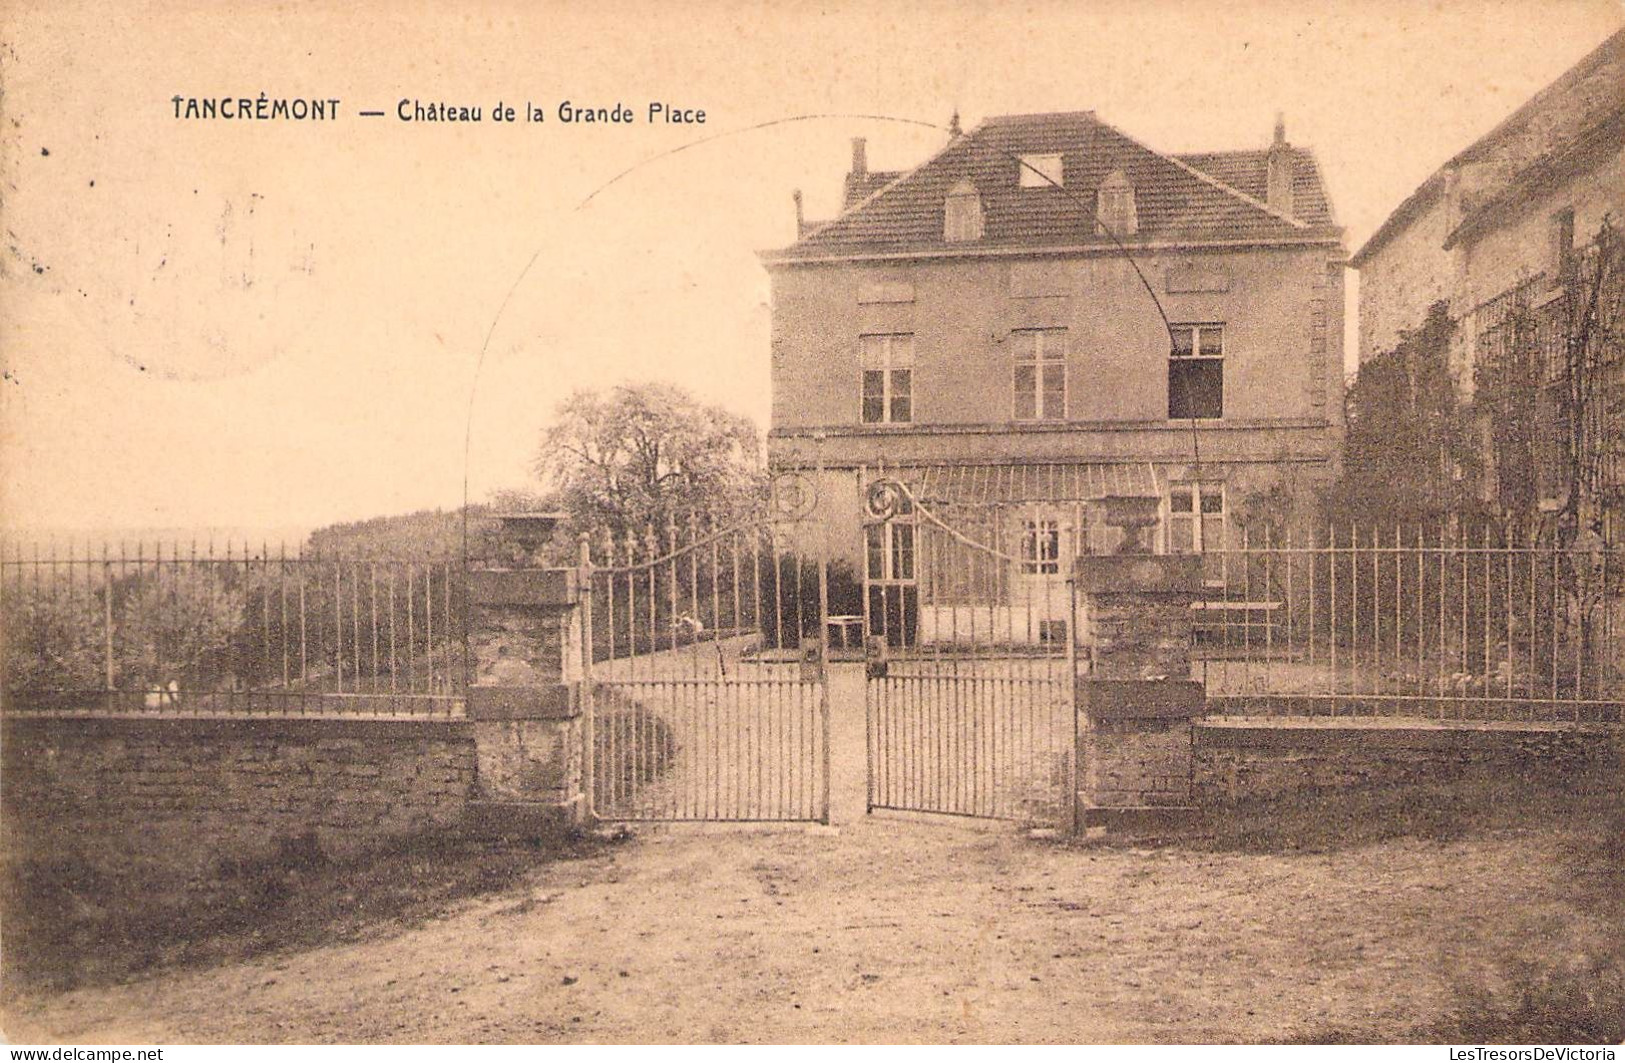 Belgique - Tancrémont - Château De La Grande Place - Phototypie E. Desaix  -  Carte Postale Ancienne - Verviers